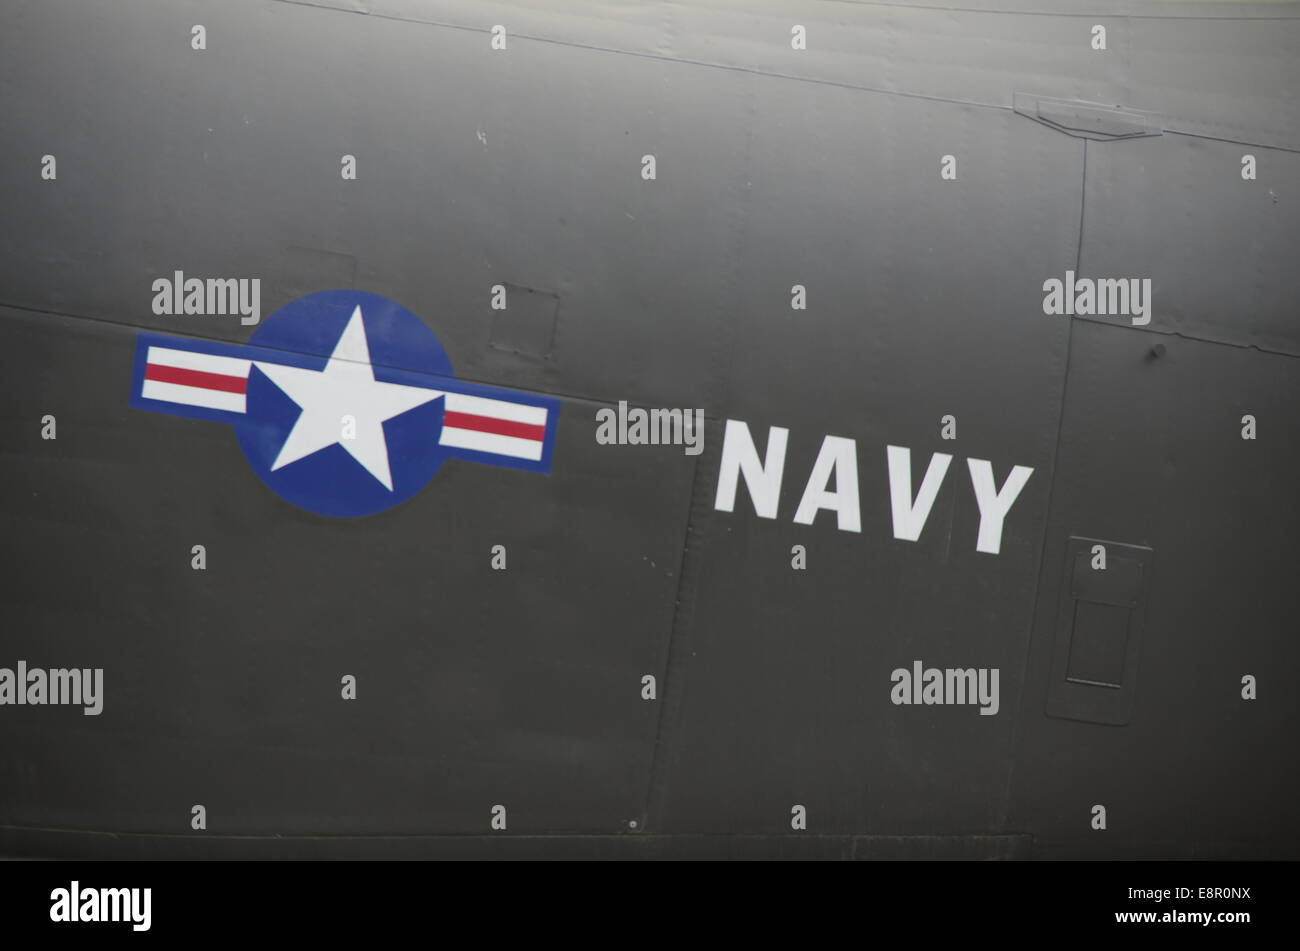 US navy logo Stock Photo